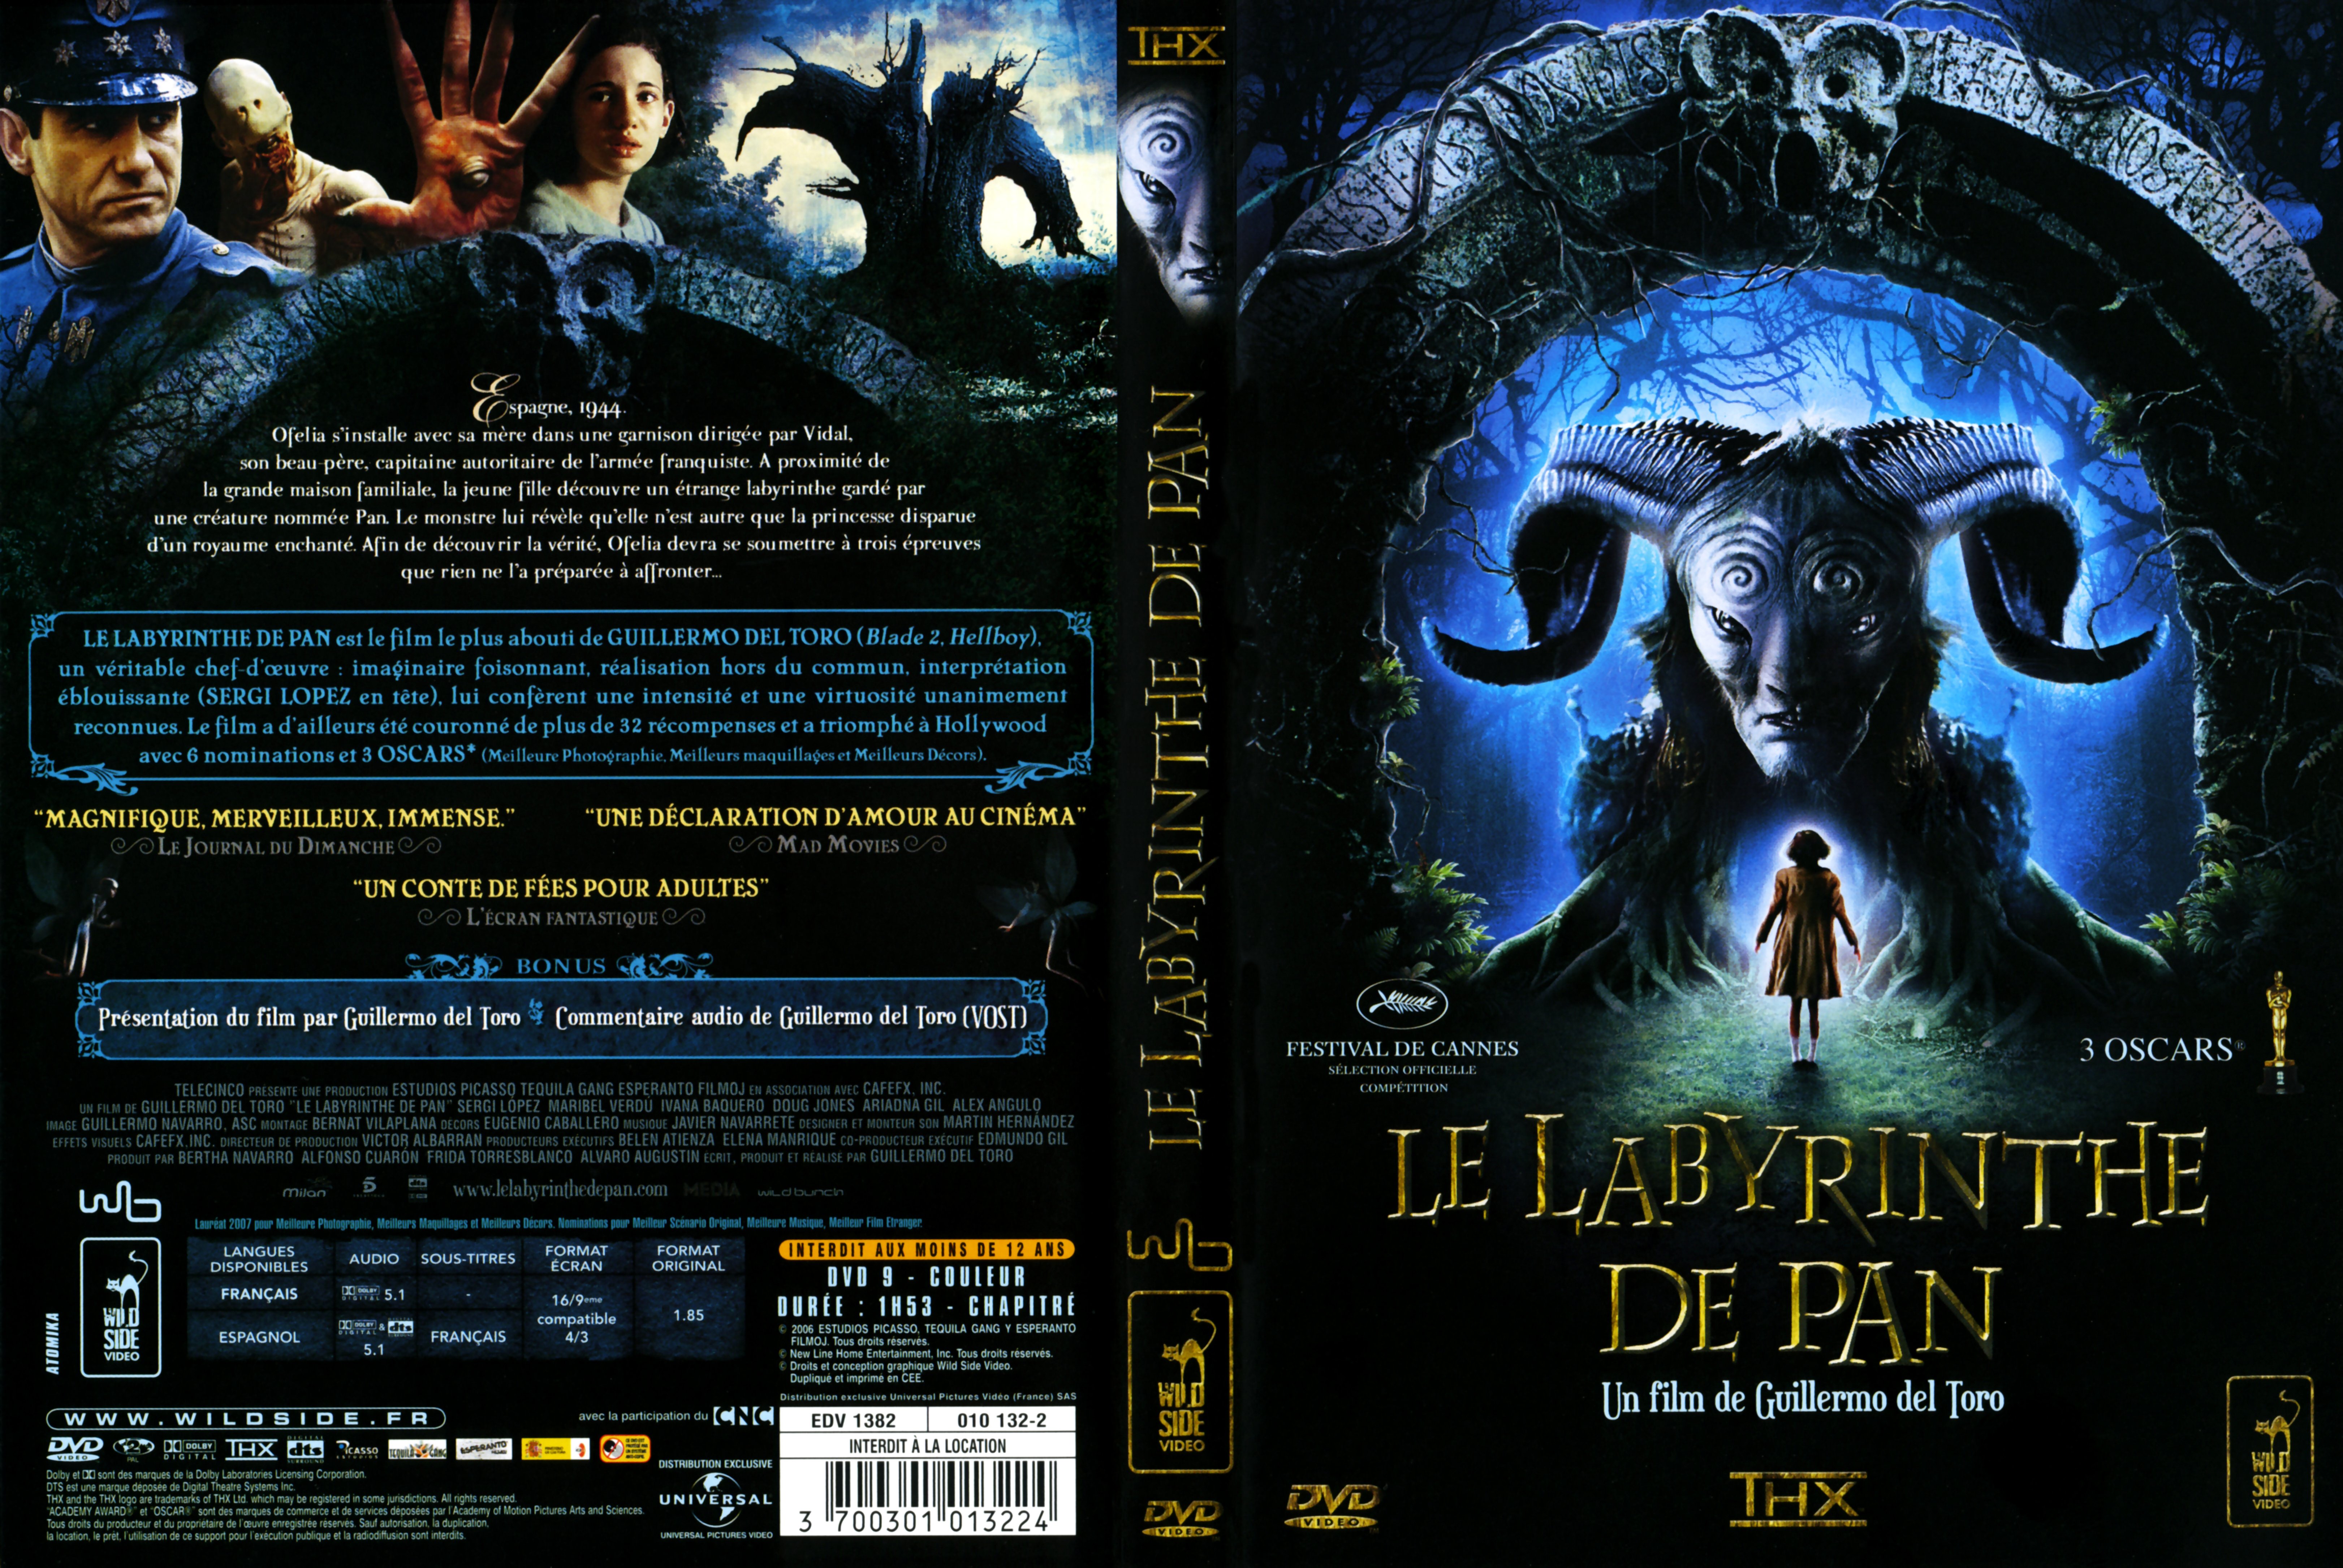 Jaquette DVD Le labyrinthe de pan v3